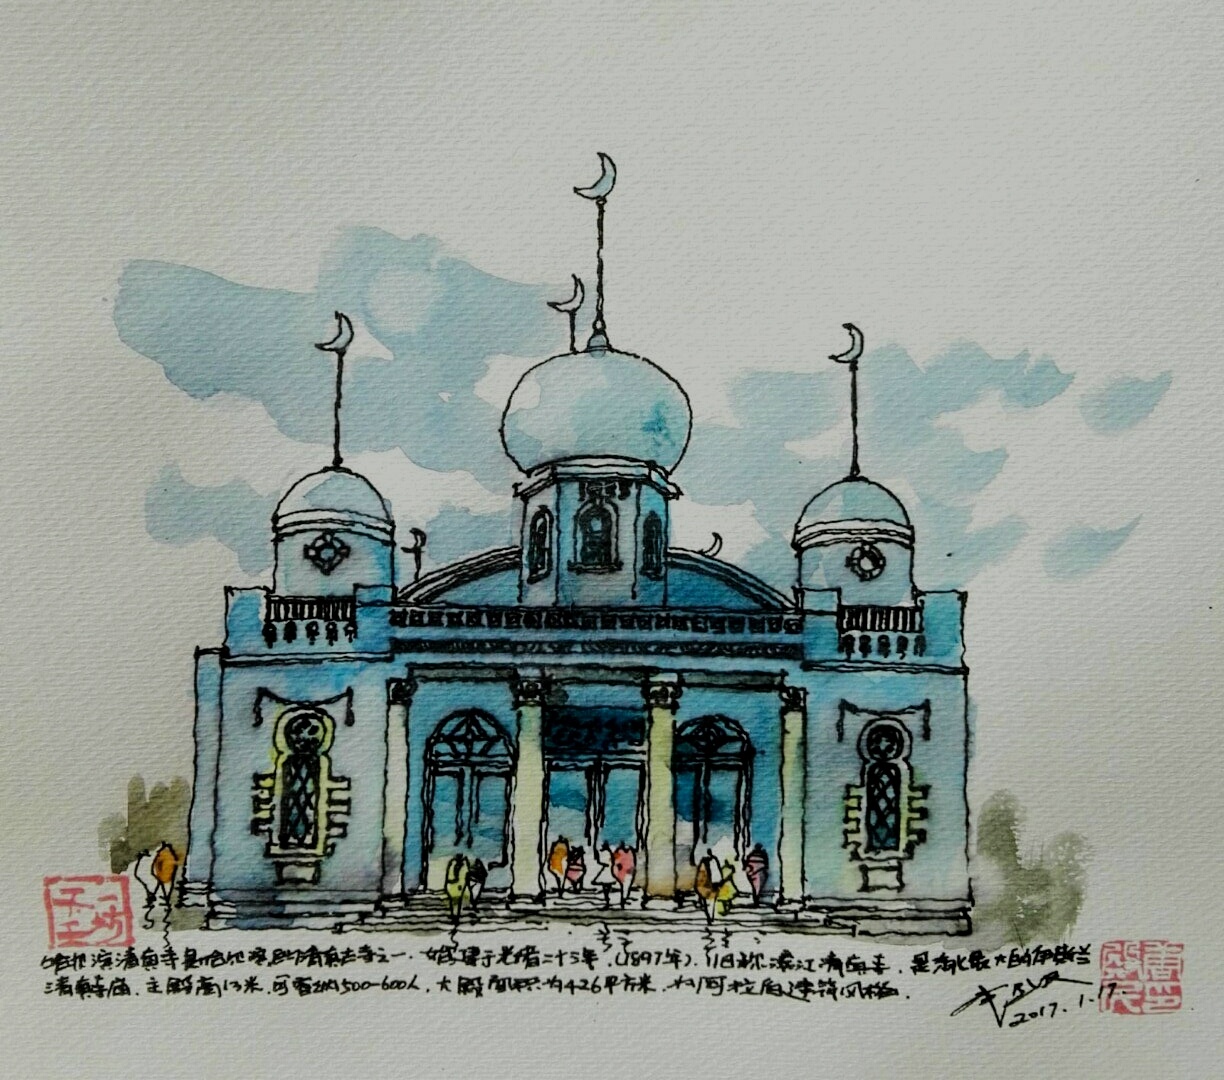 哈尔滨手绘风景明信片旅游纪念纸质工艺礼品中央大街索菲亚教堂-阿里巴巴